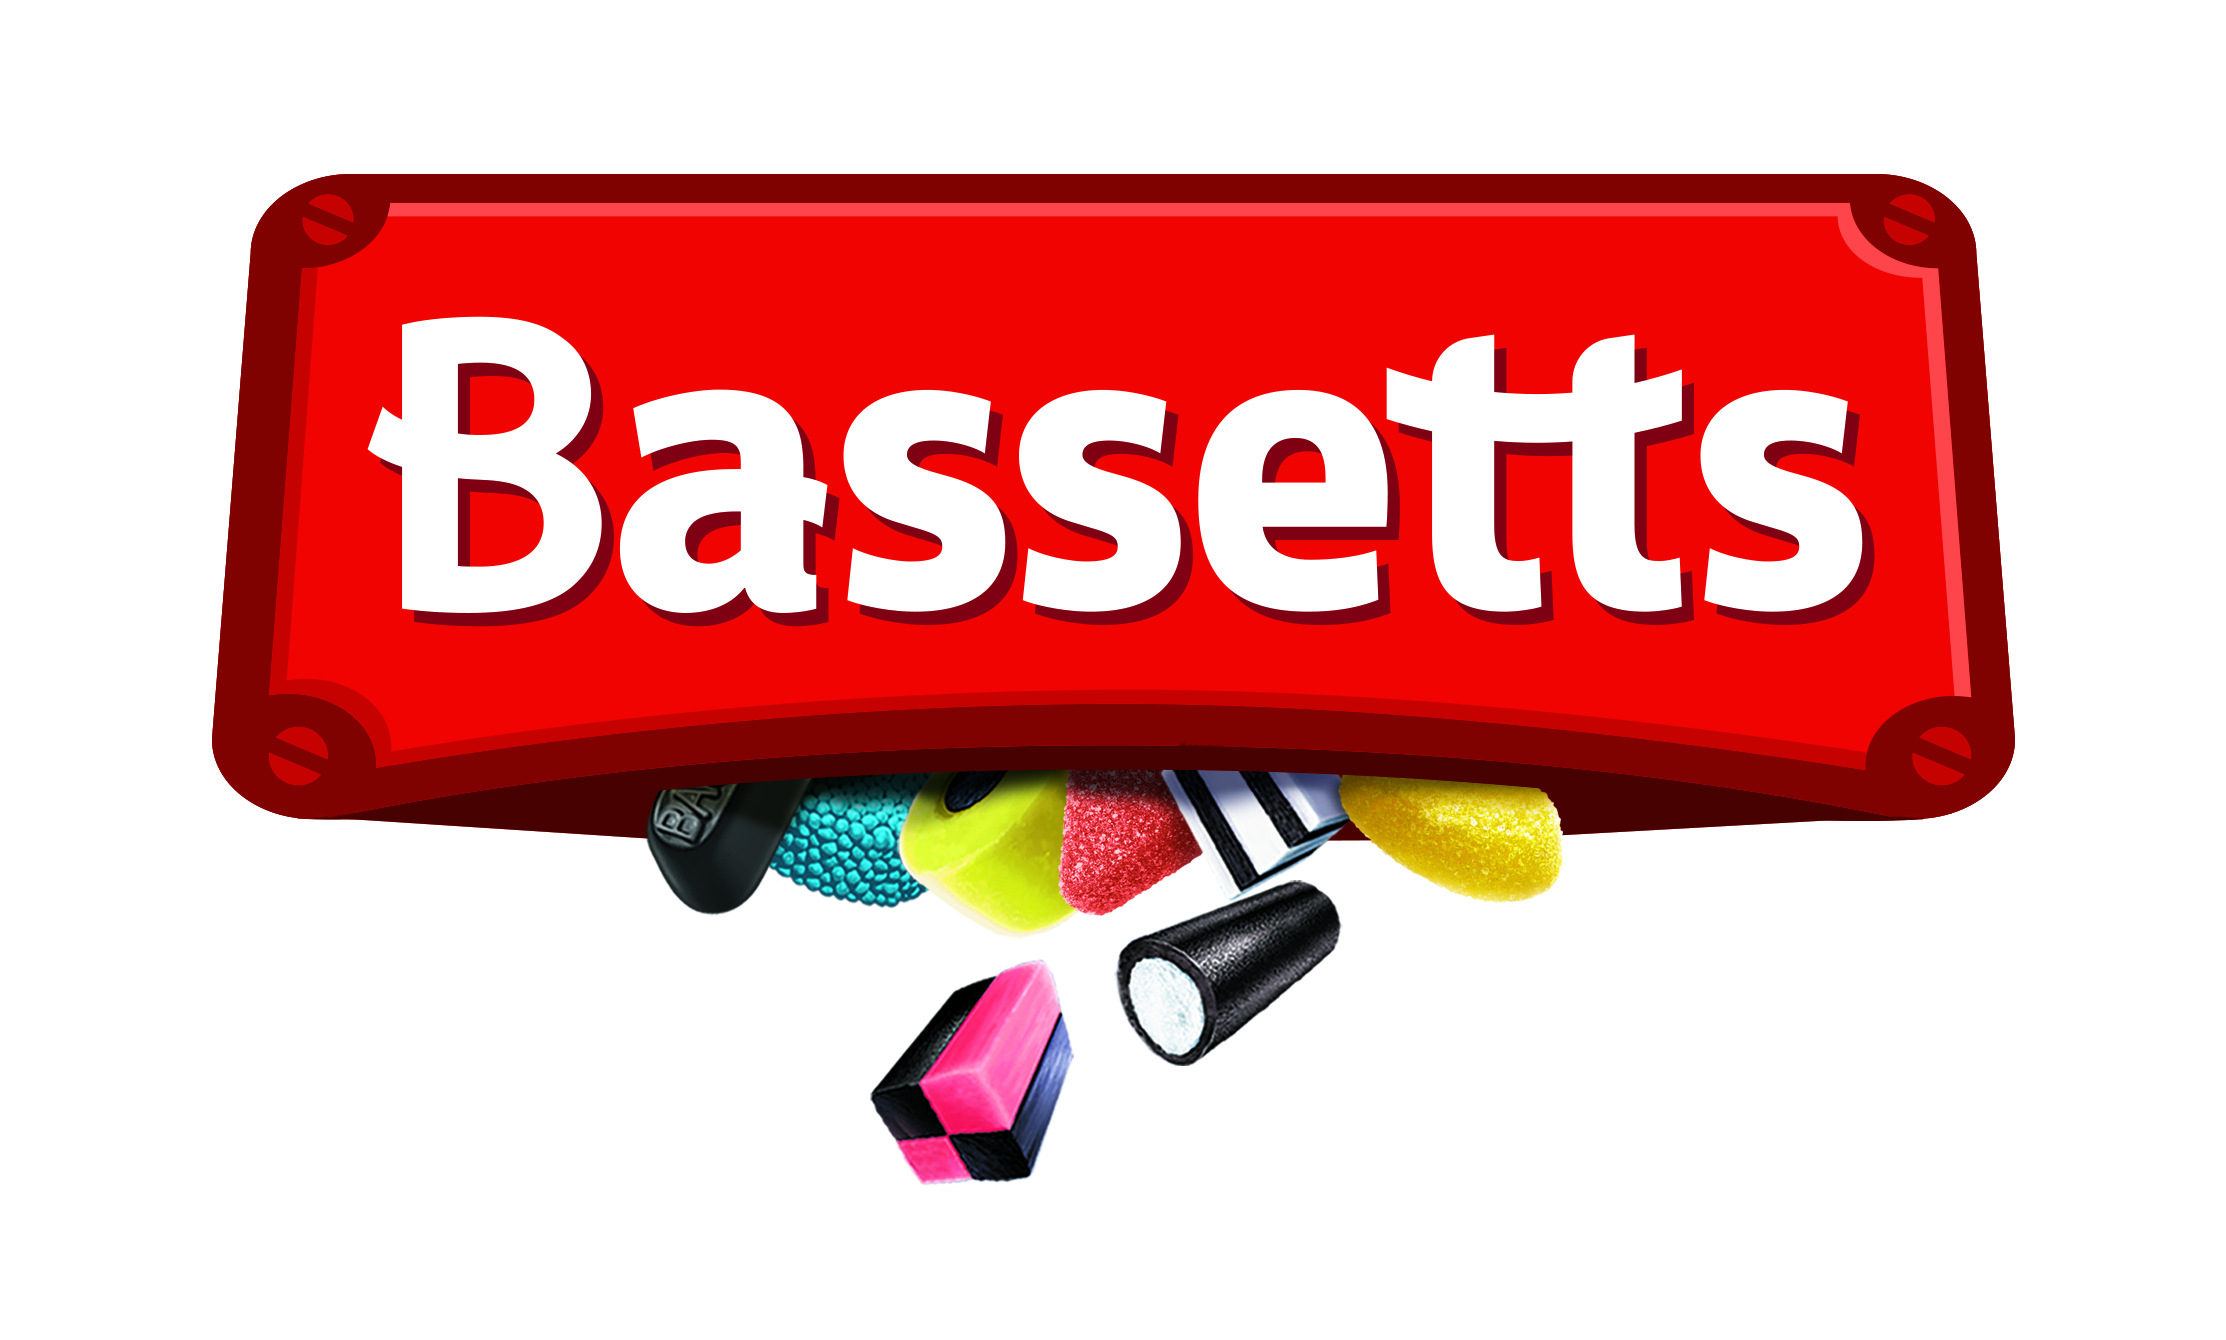 Bassetts logo